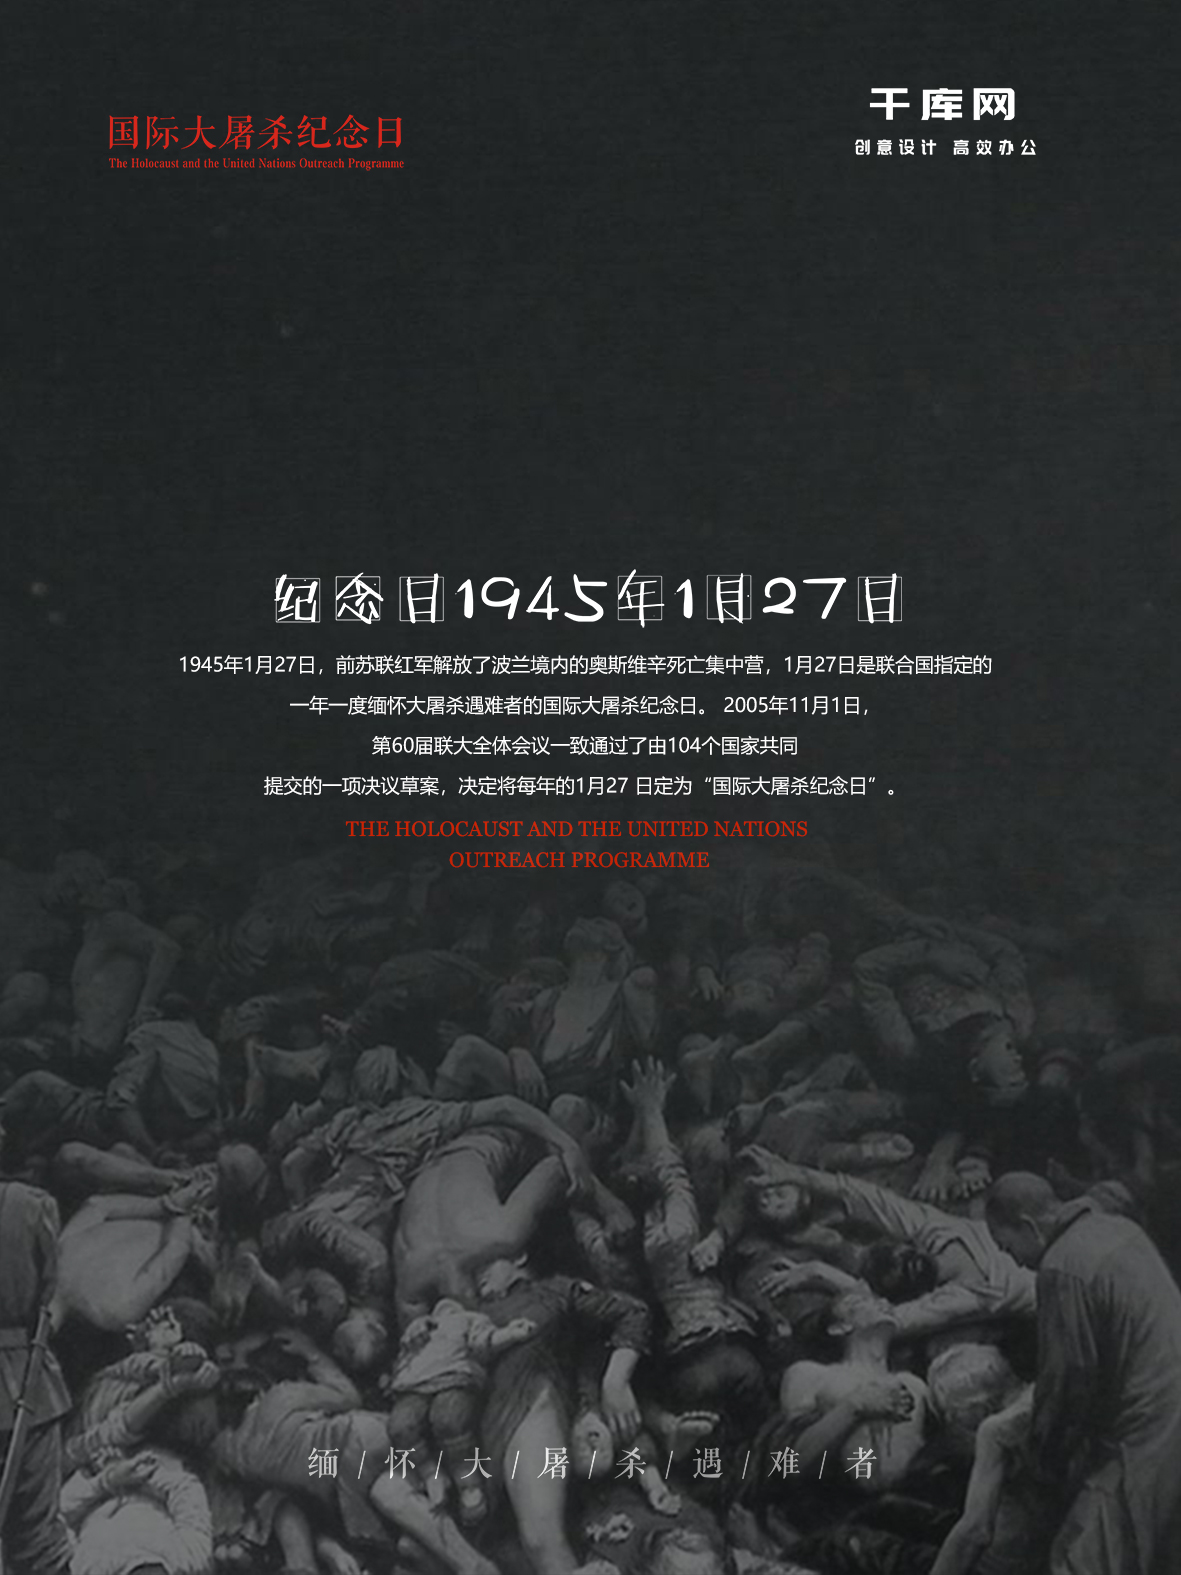 国际大屠杀纪念日创意海报设计图片